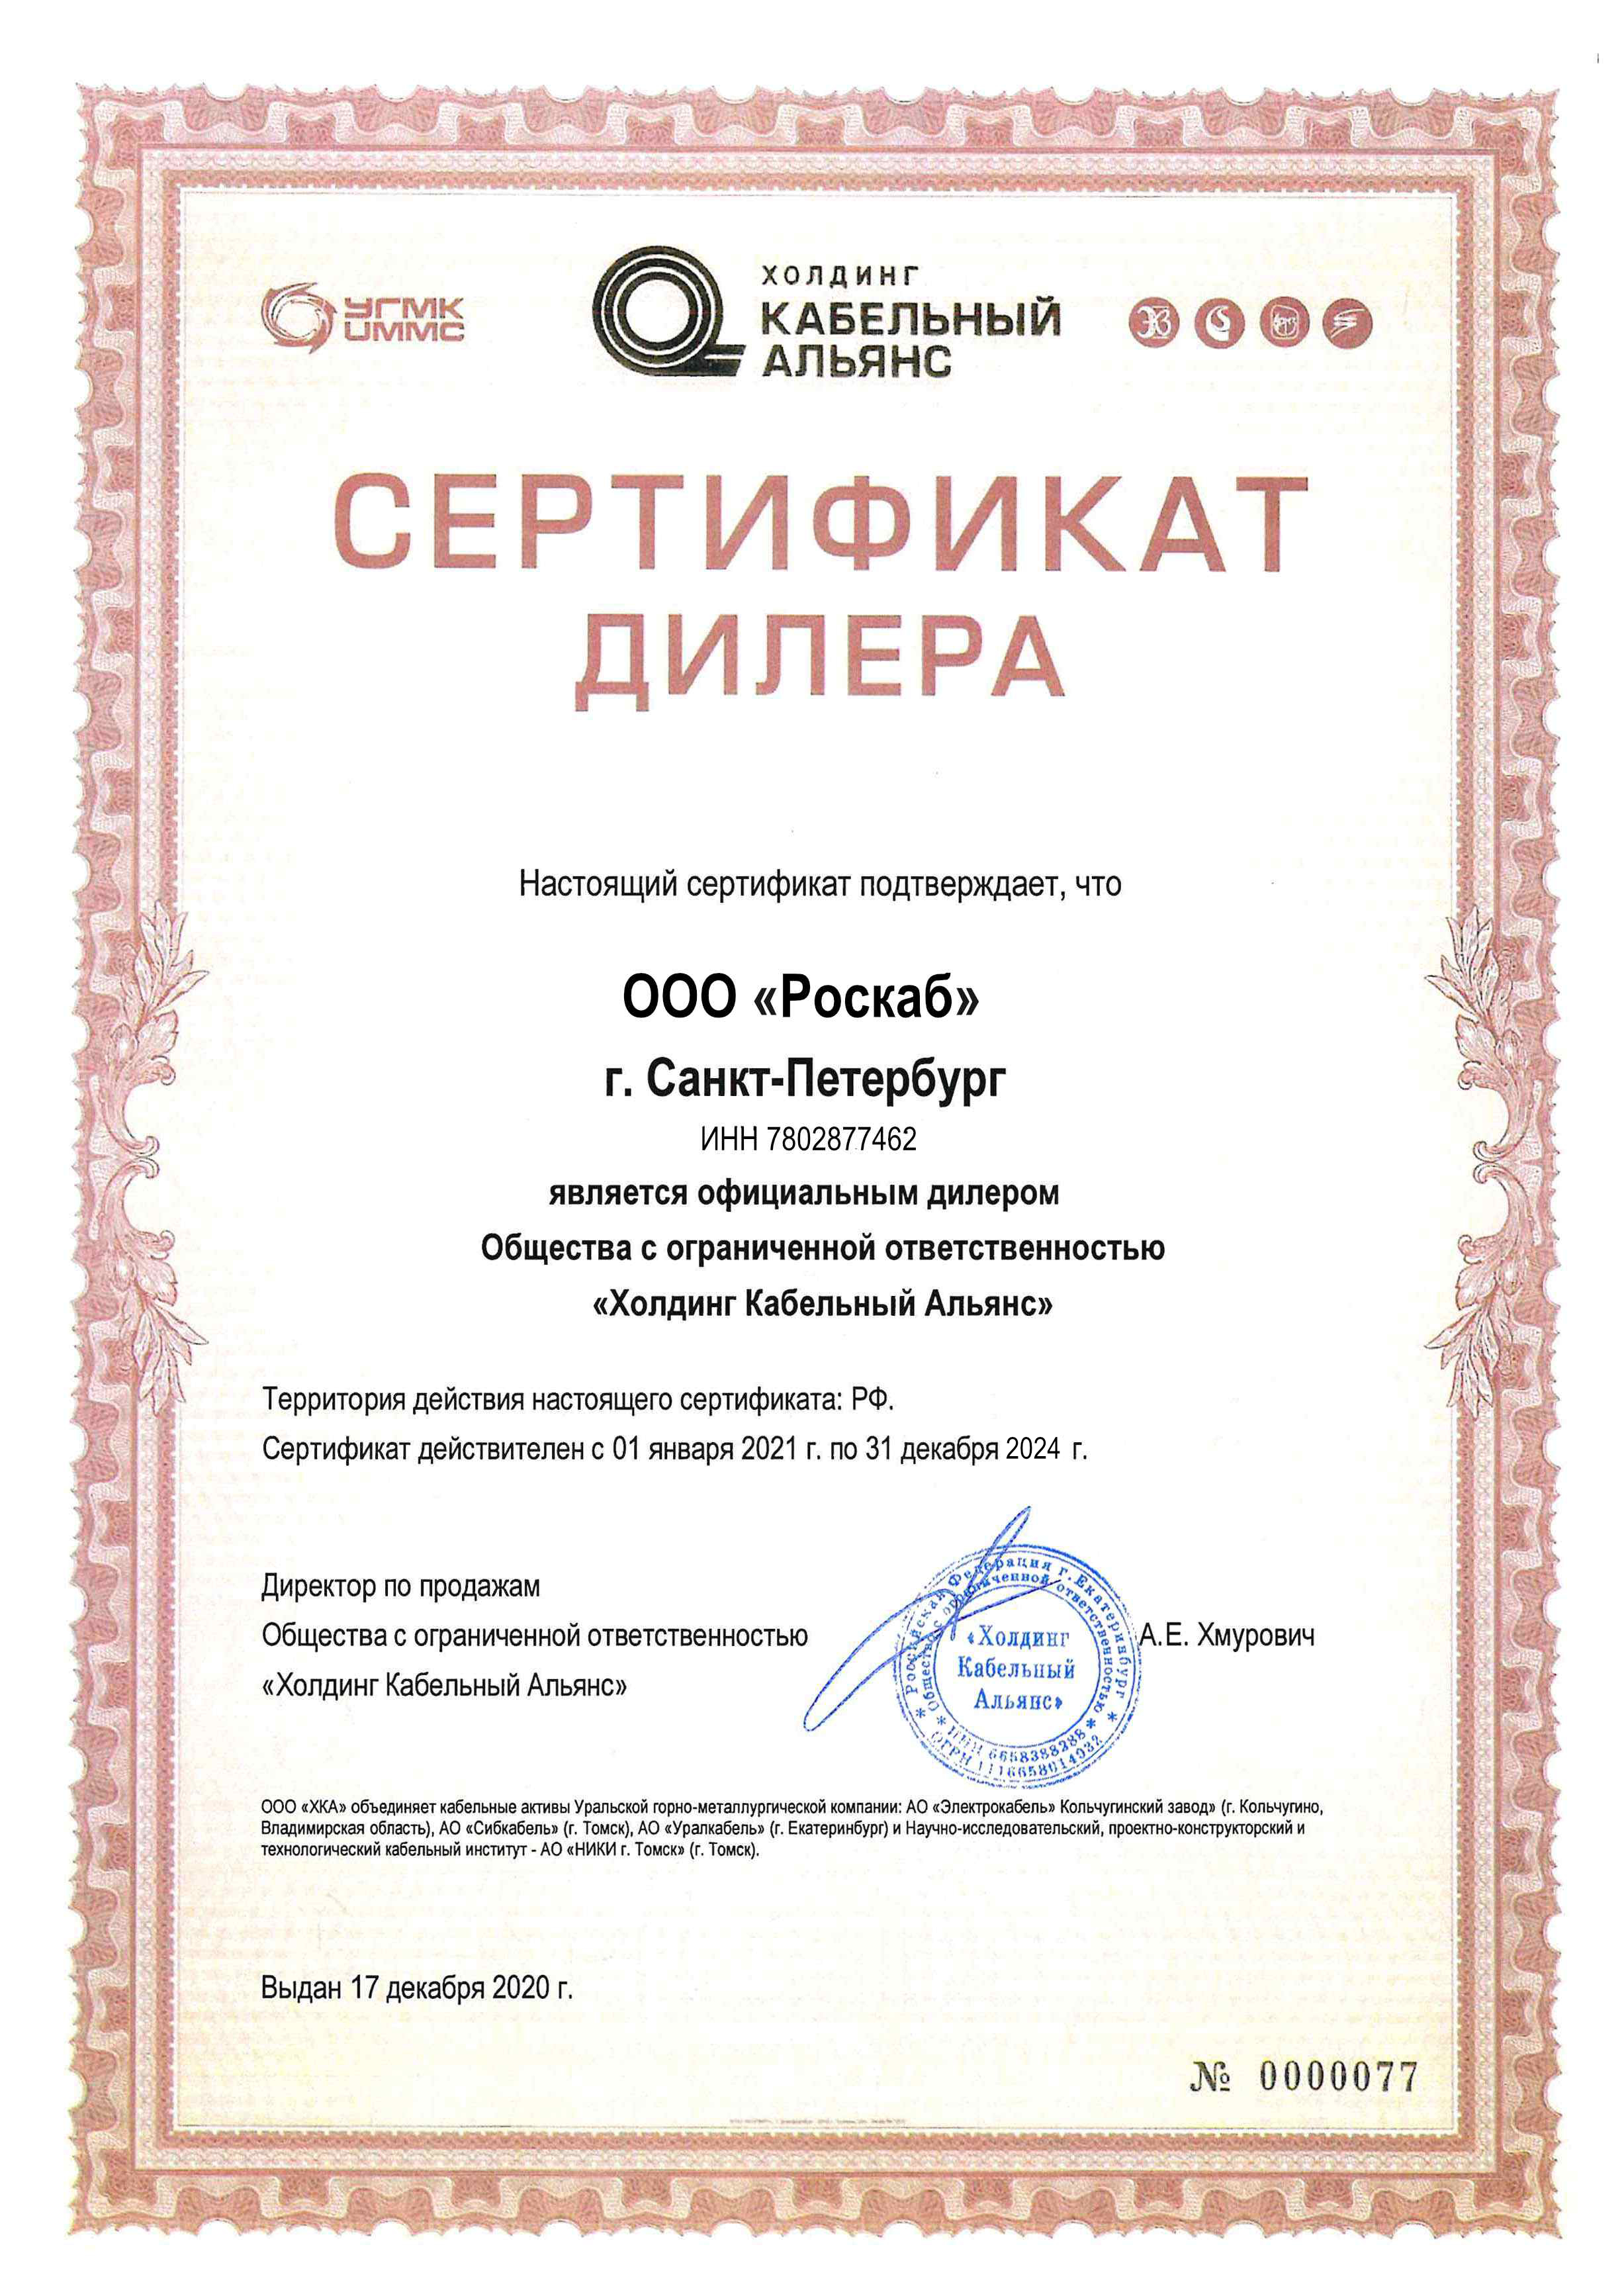 Сертификат дилера Кабельный Альянс